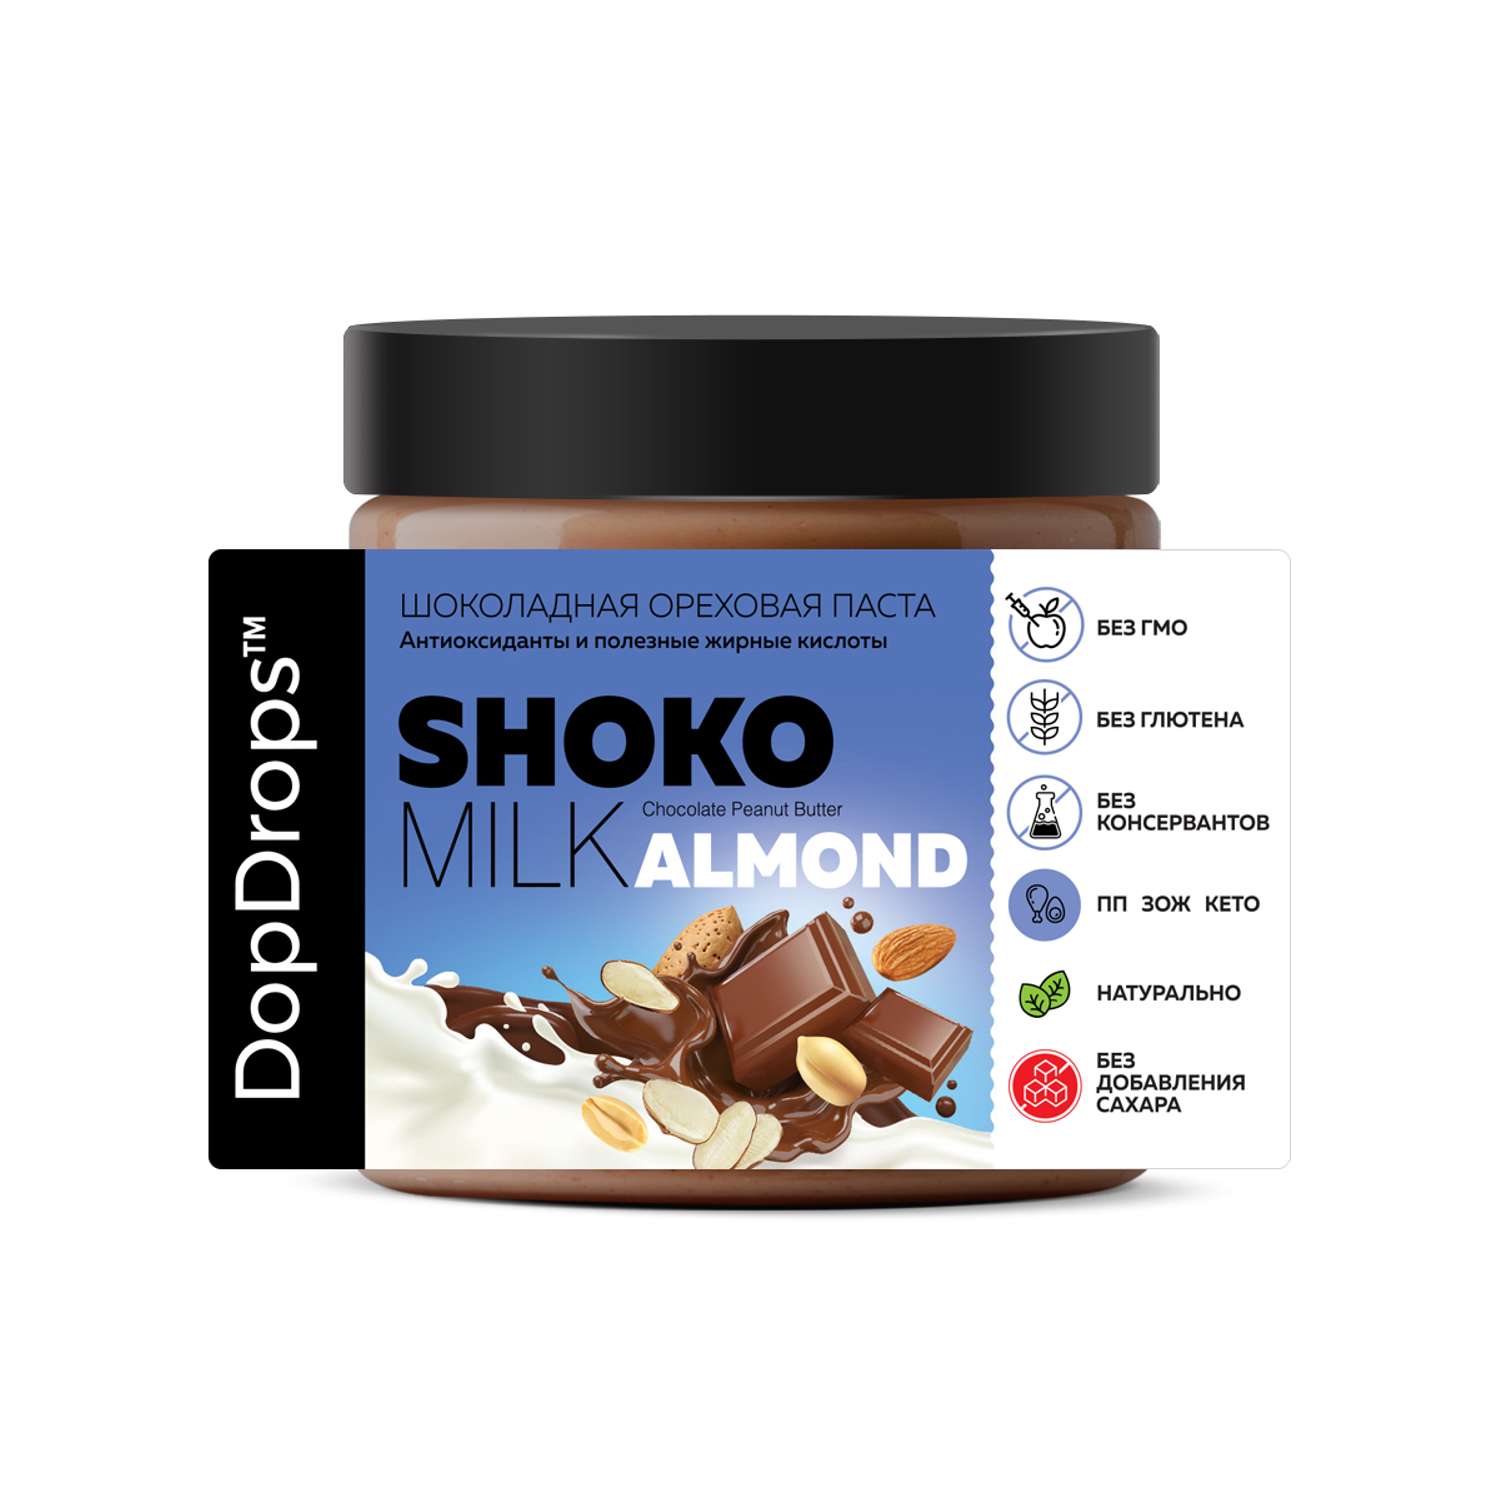 Шоколадная ореховая паста DopDrops Shoko milk арахисовая с лепестками миндаля без сахара 500 г - фото 4